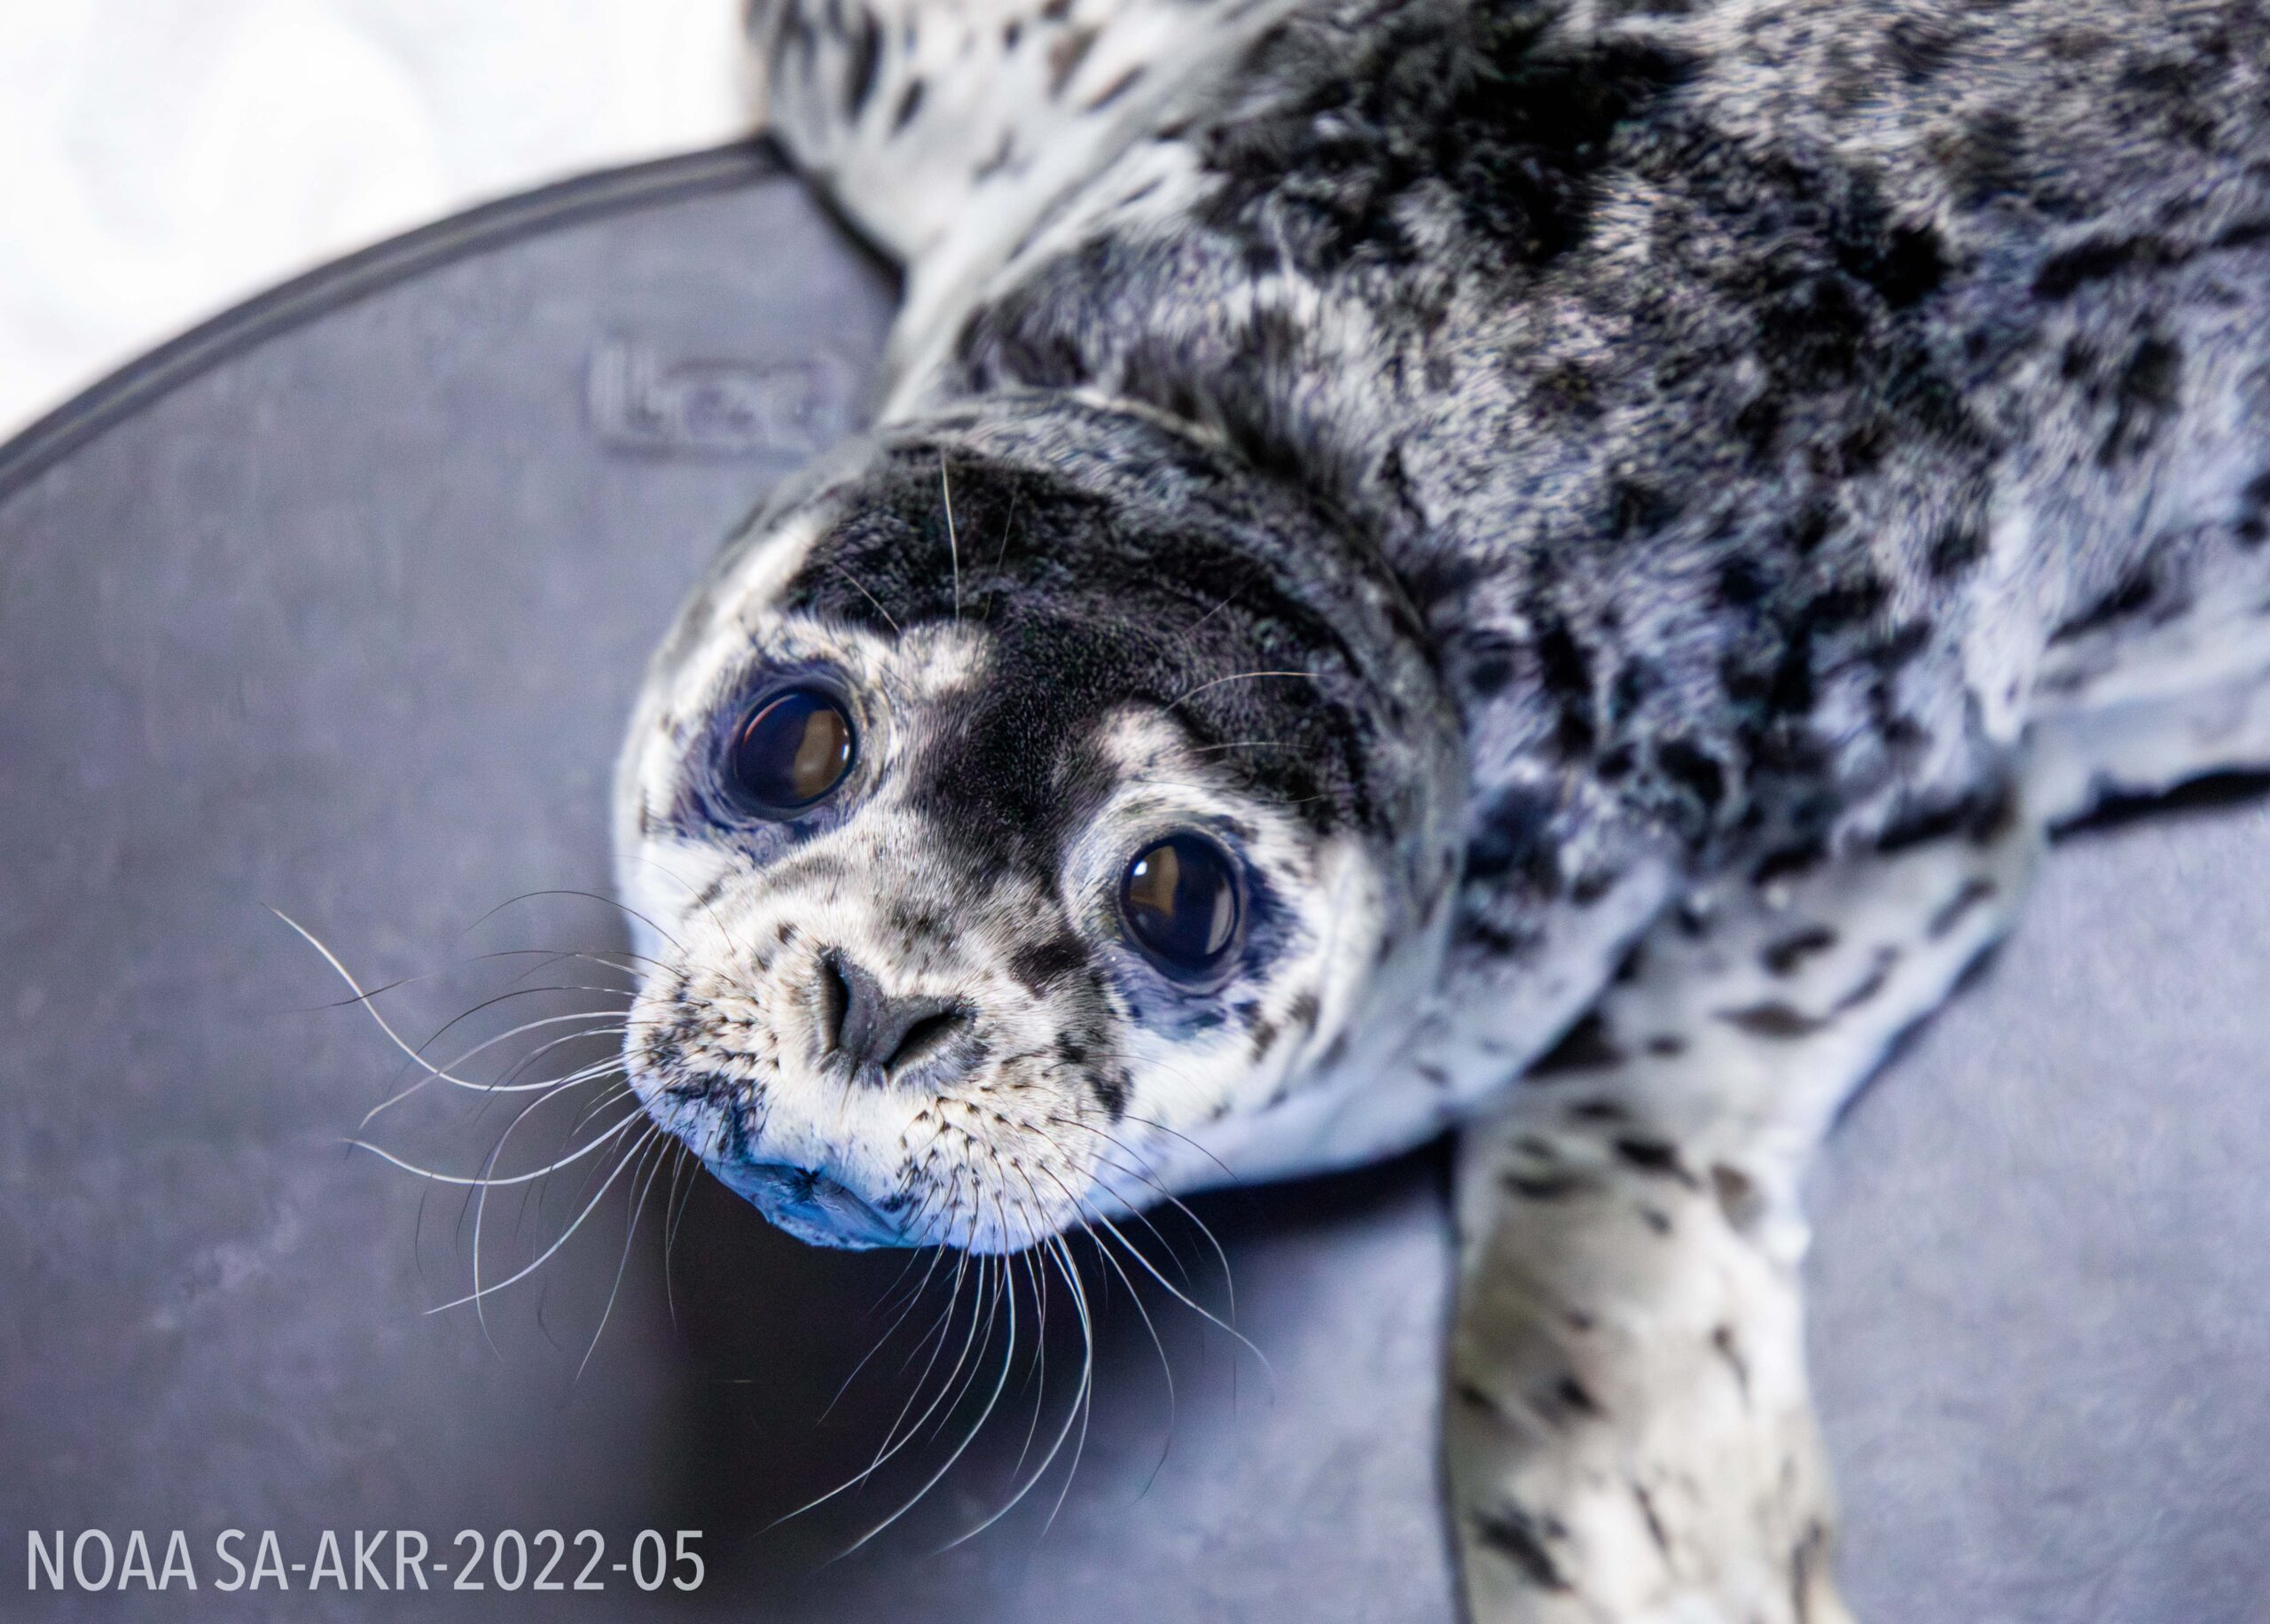 a harbor seal pup